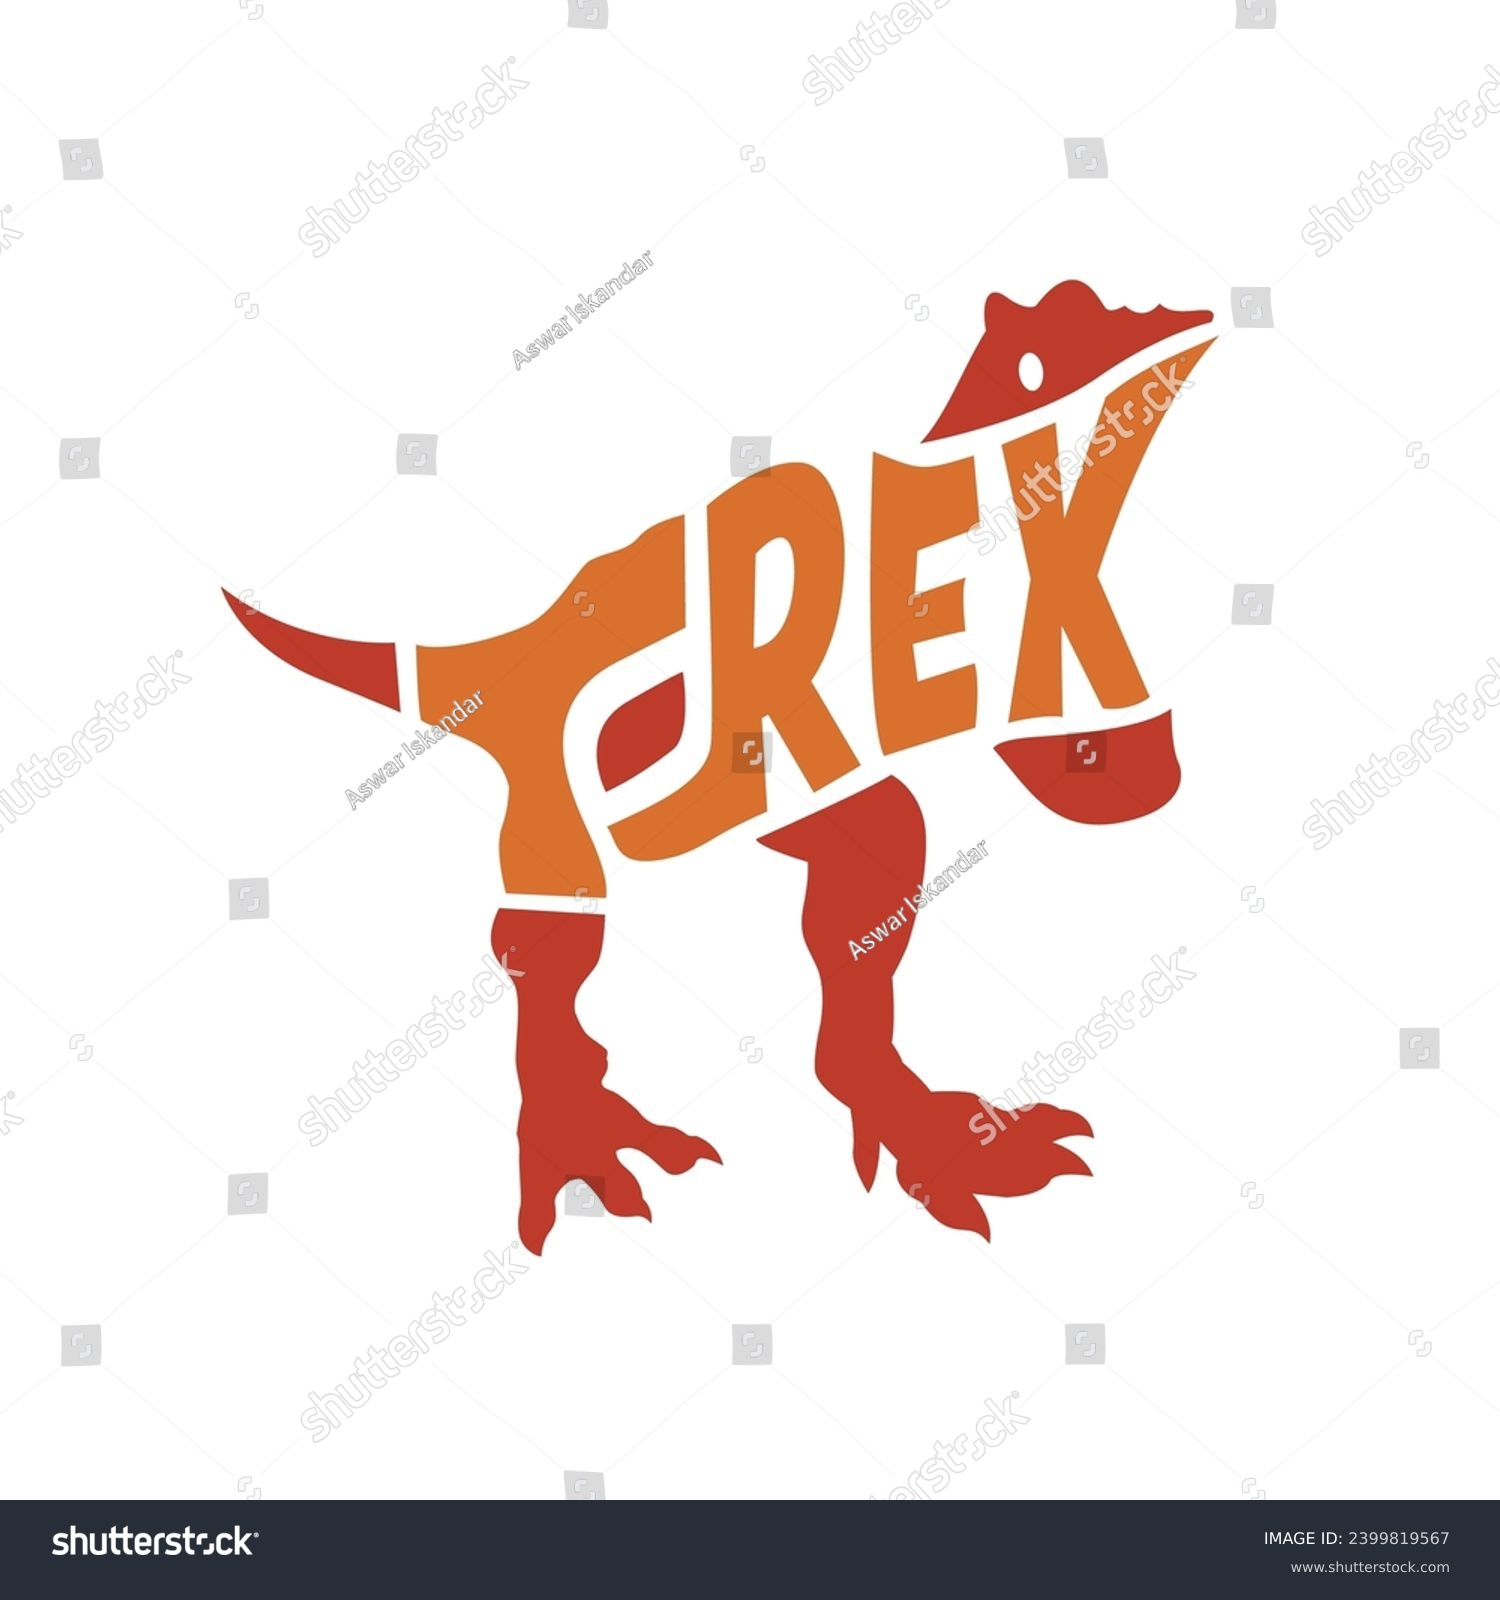 SVG of T-rex letter icon logo vector design. Suitable for T-shirt design, merchandise, etc svg